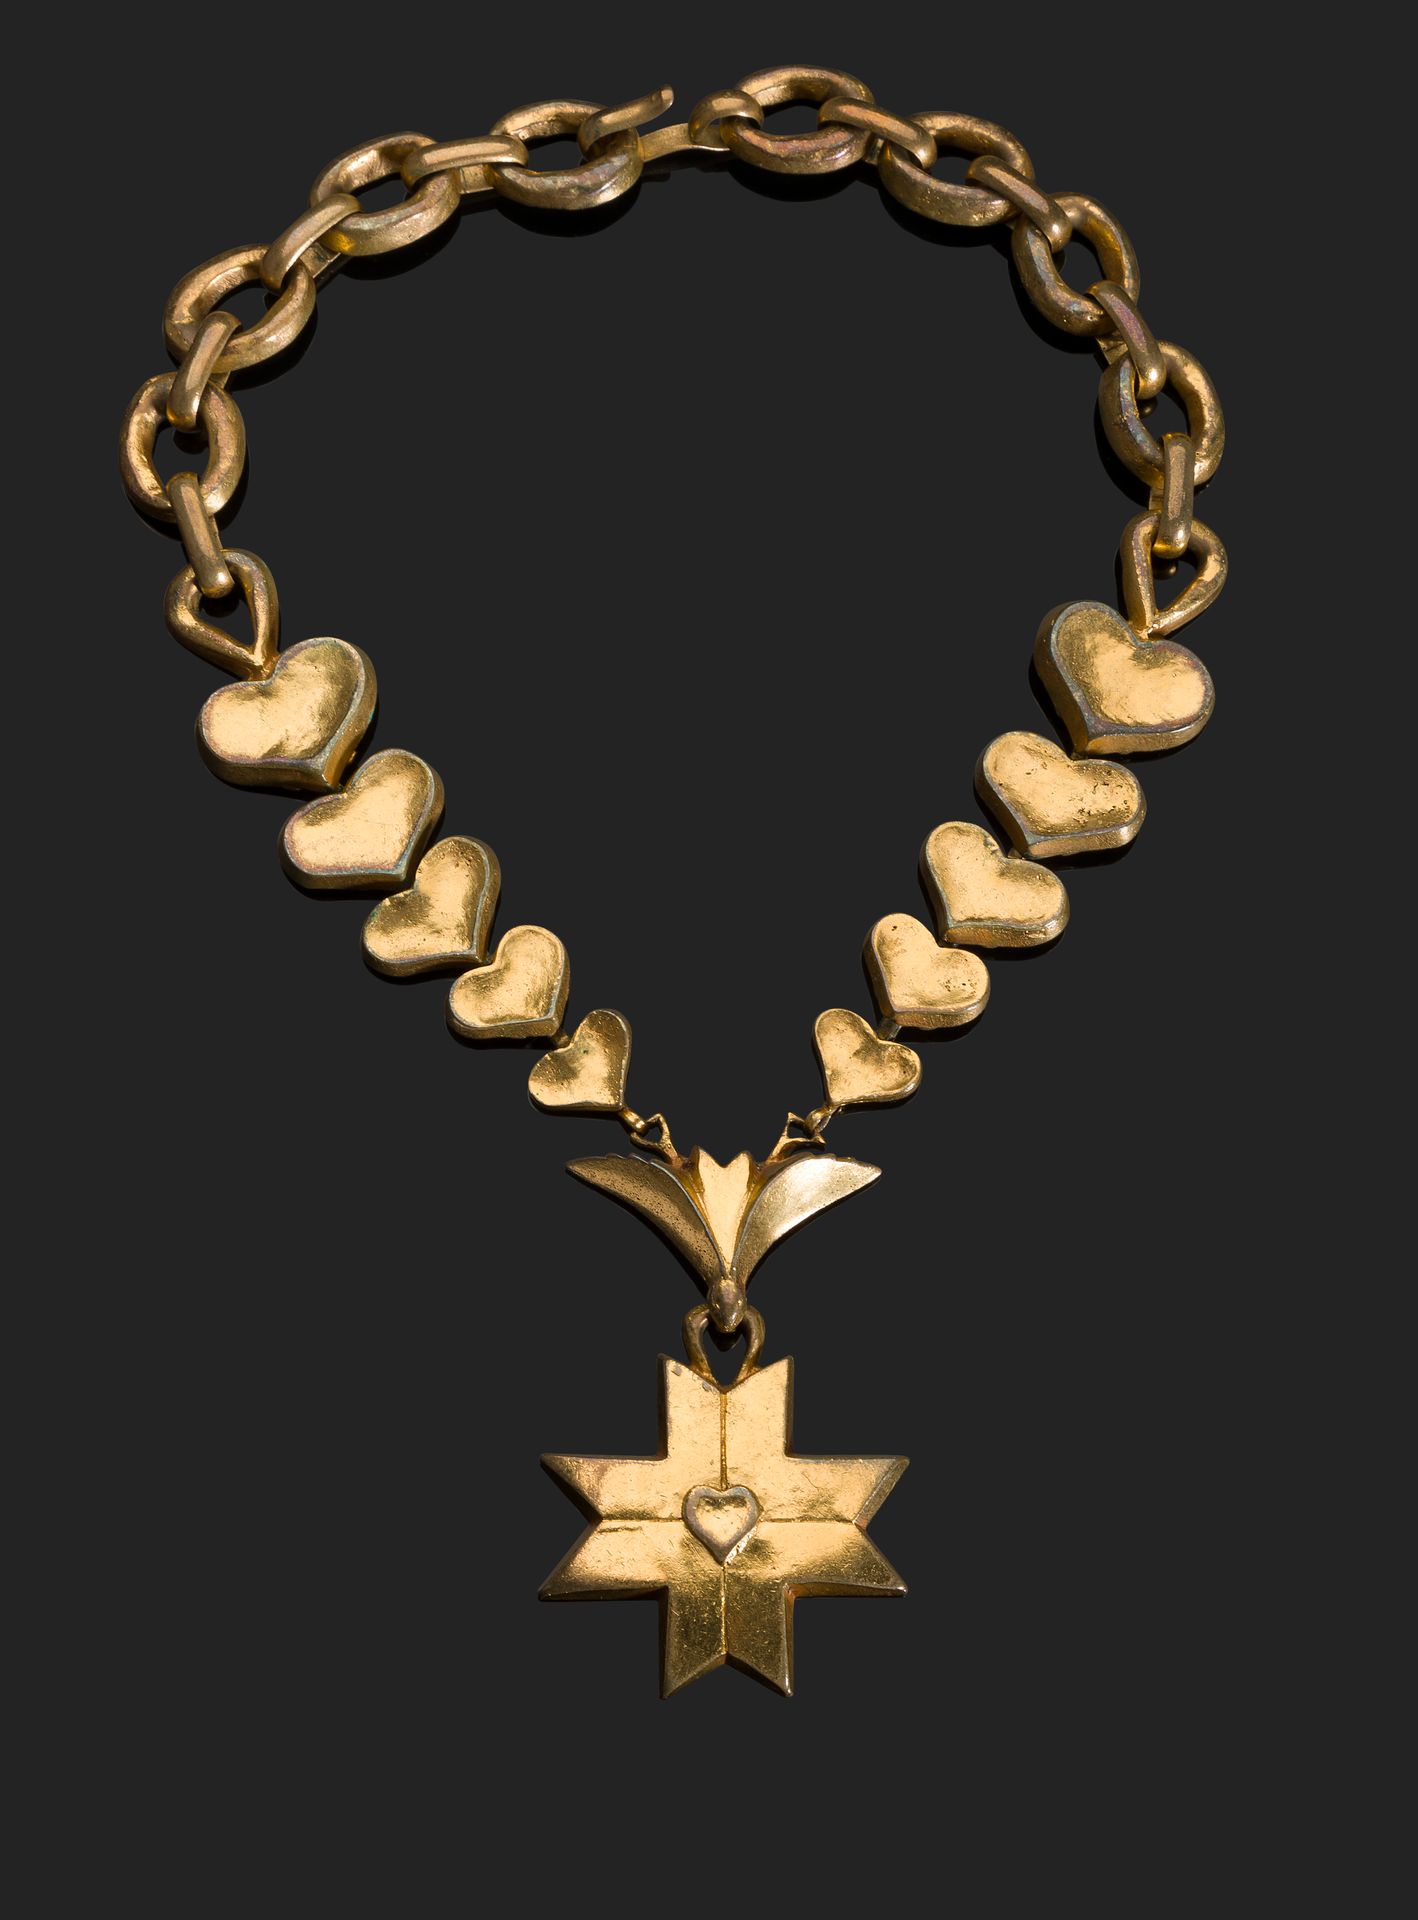 Null 沃特林线 (1913-1997)
圣灵的十字架
鎏金青铜项链，上面的心形图案是一个造型的十字架
已签名